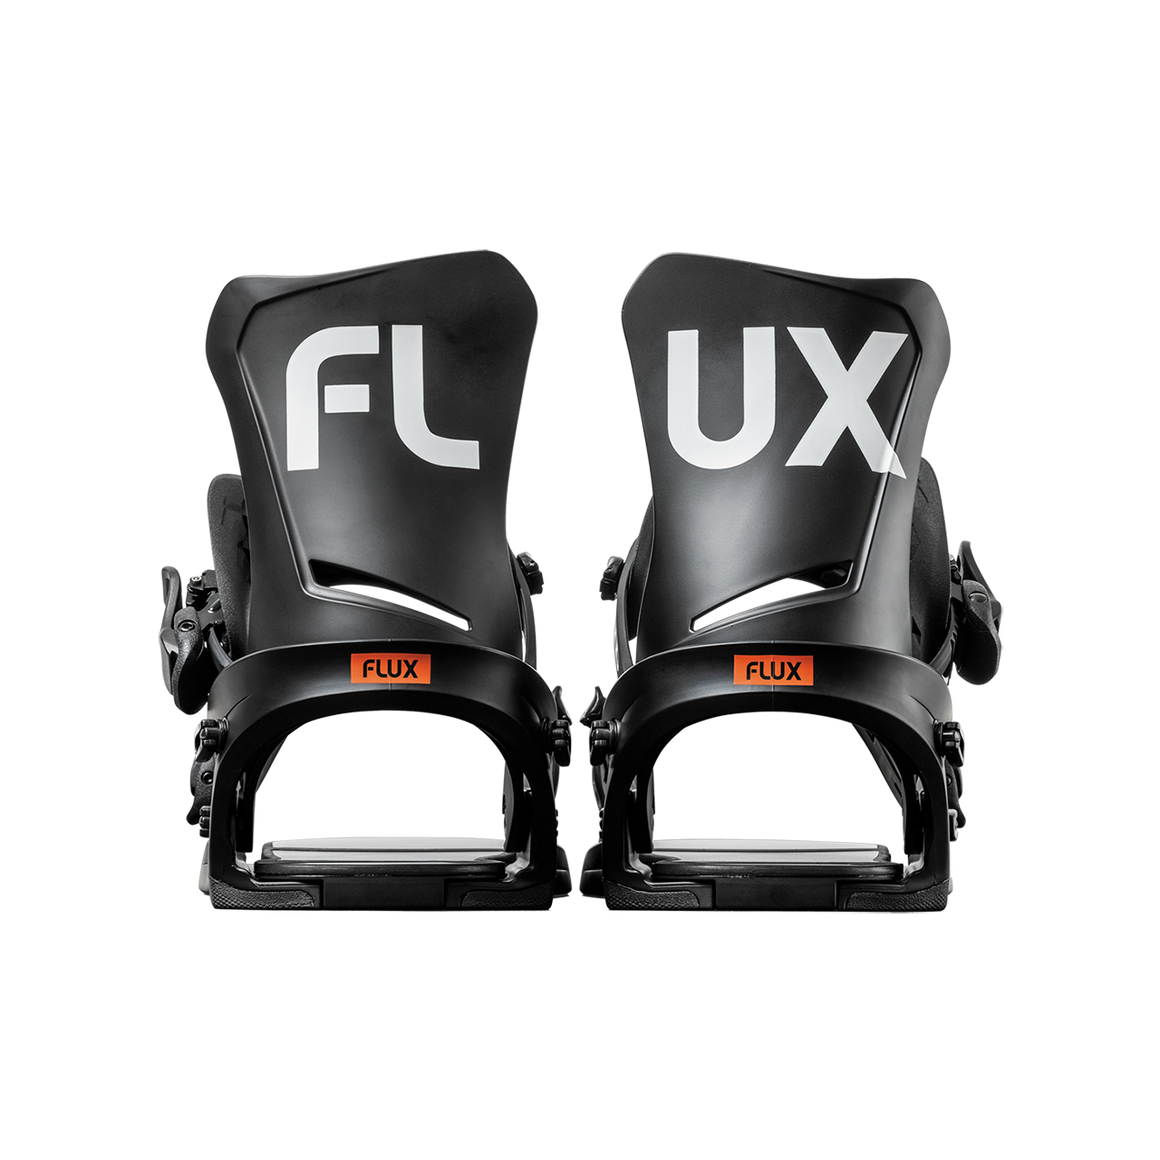 FLUX ビンディング FLUX DS スノーボード グラトリ ジブ フリーランパウダー